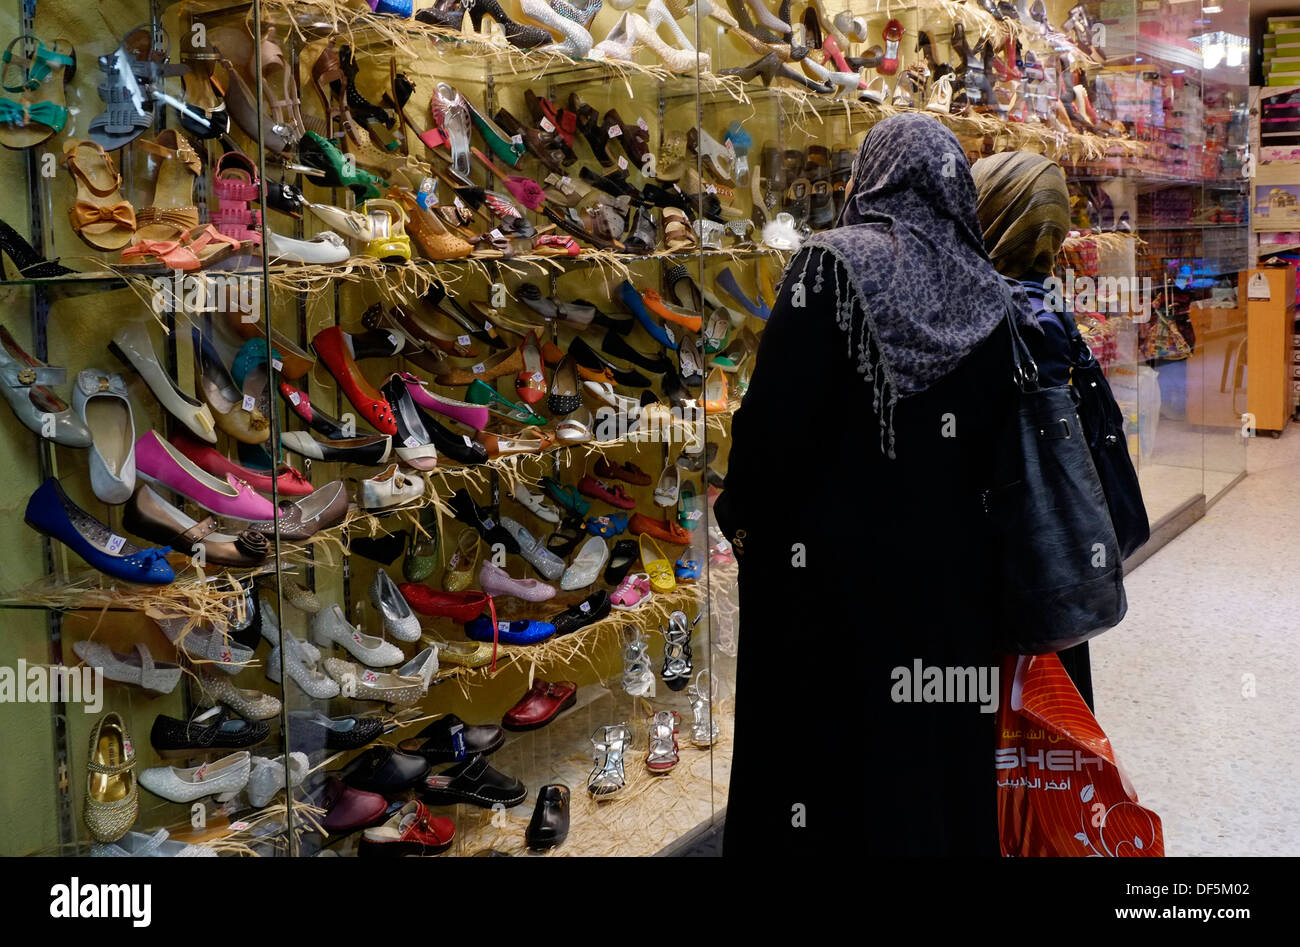 shoe shops in khan market